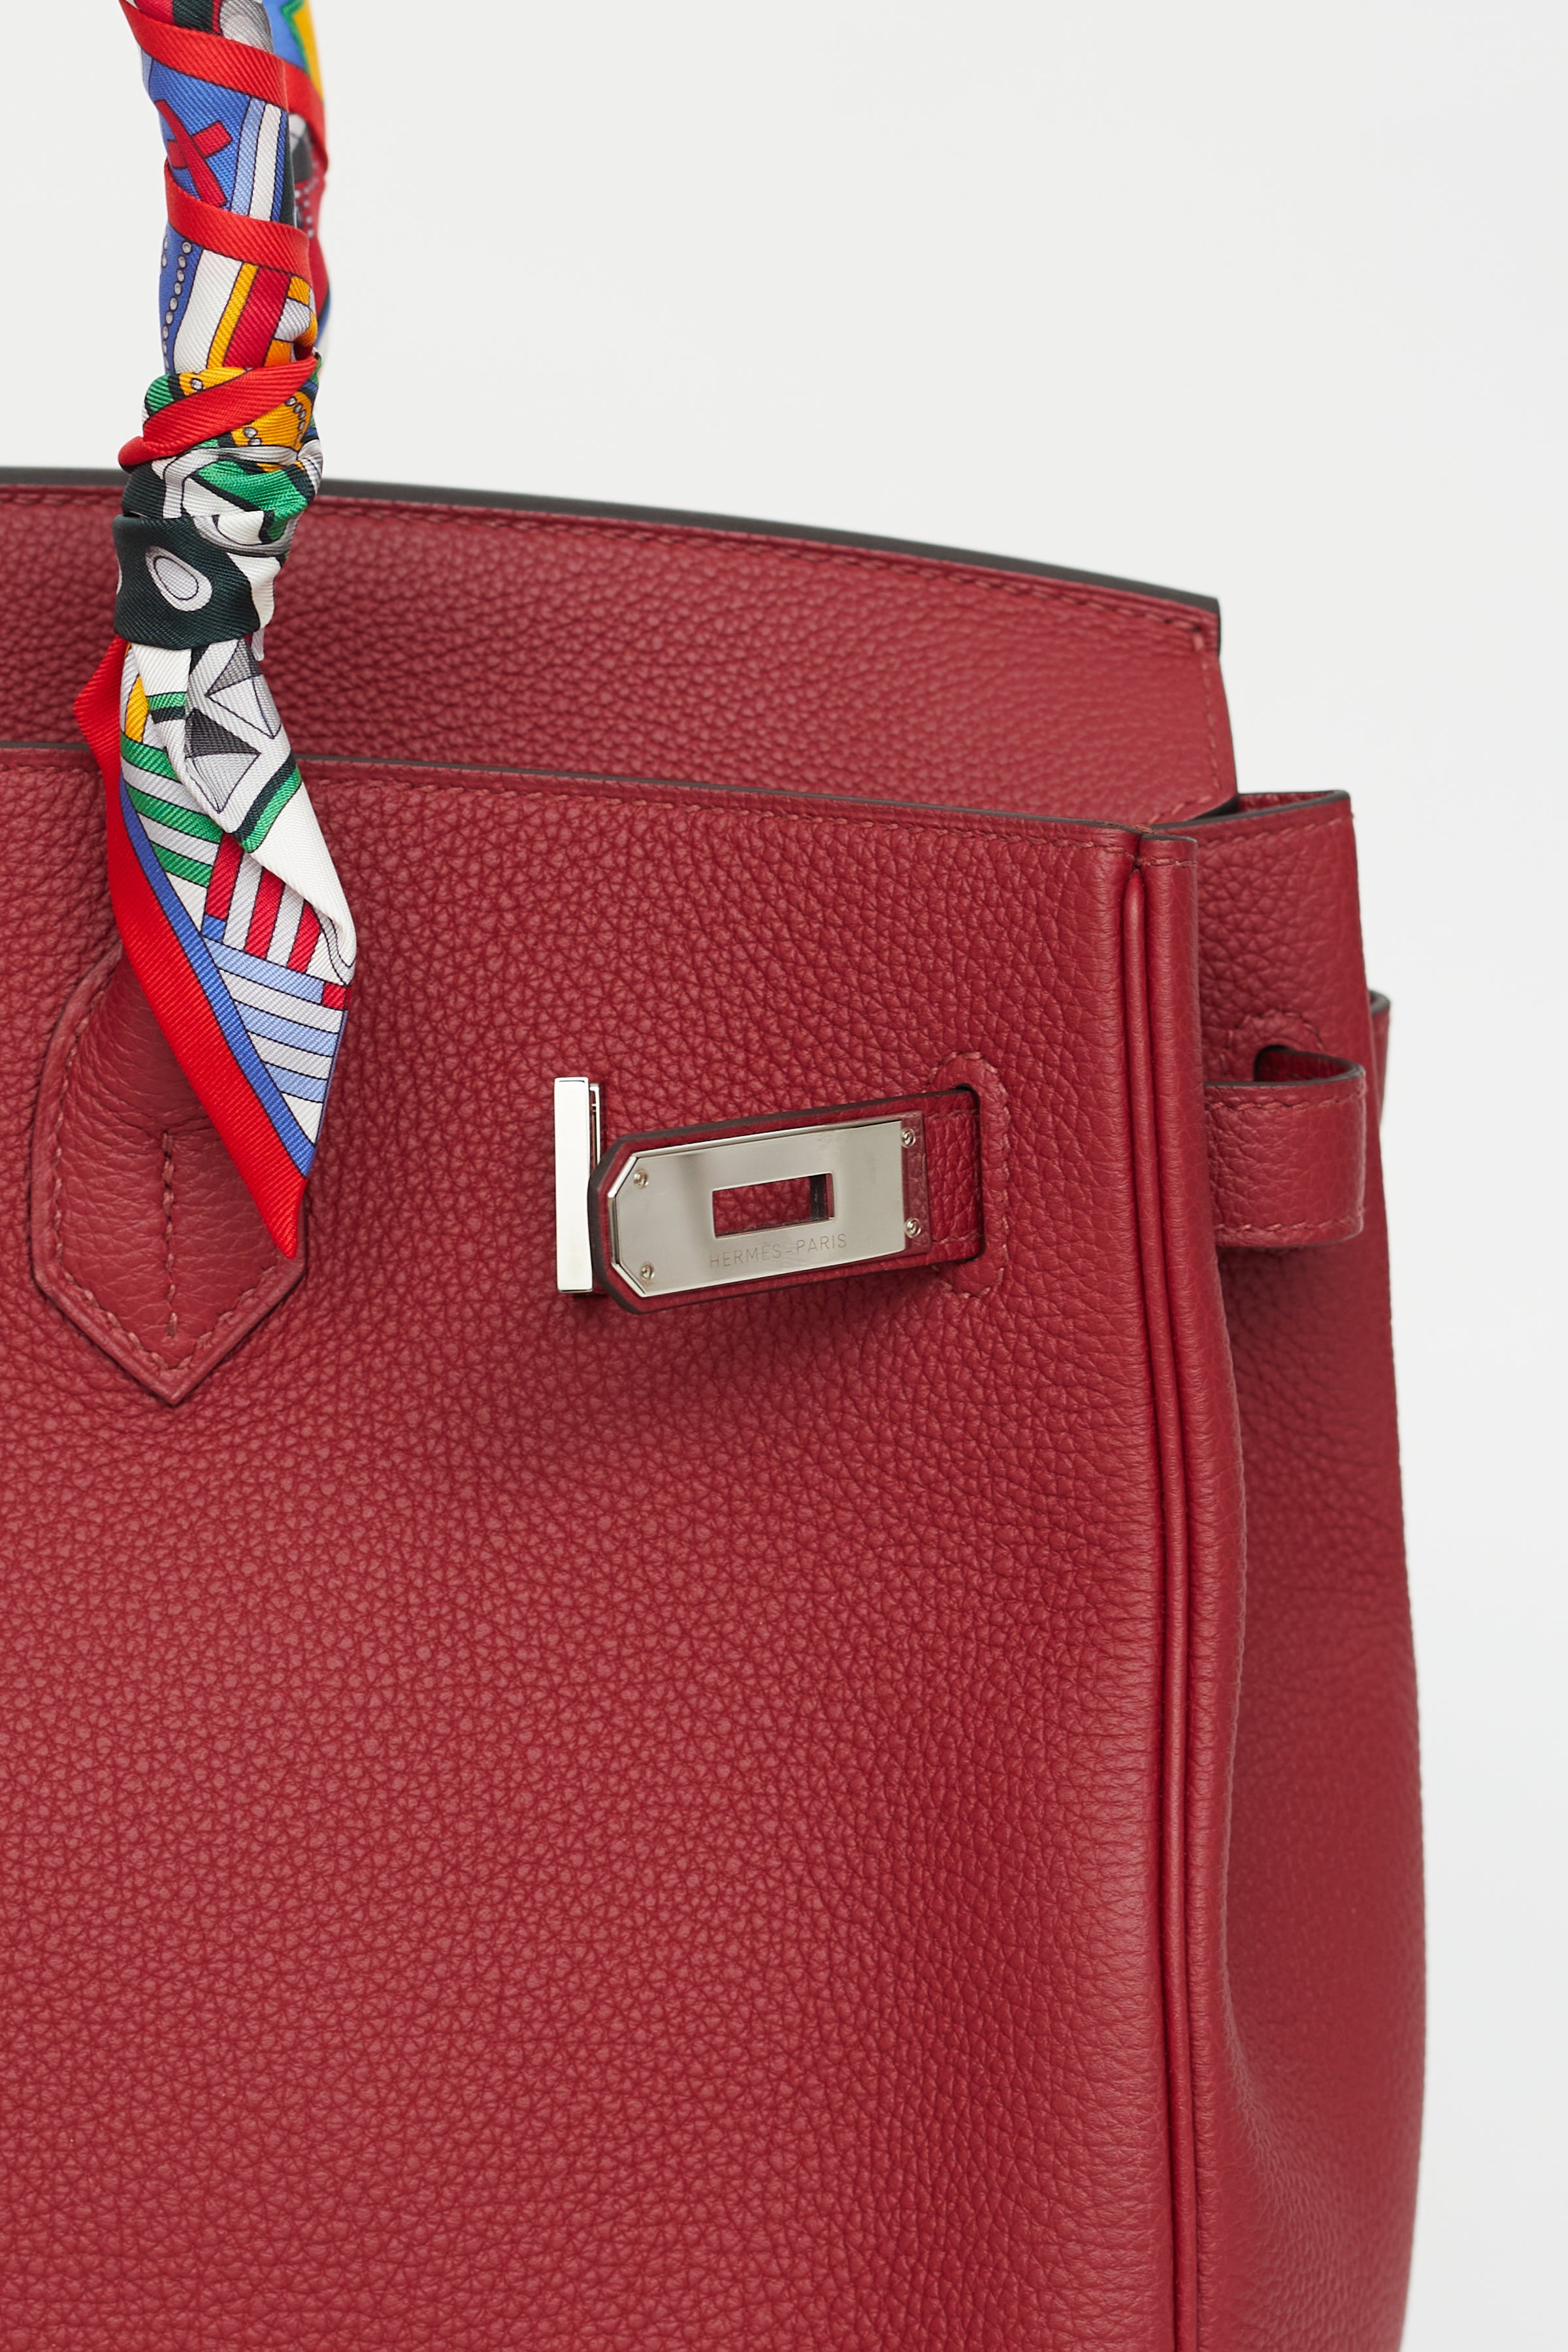 Hermès // 2016 Rouge Grenat Togo Birkin 35 Bag – VSP Consignment